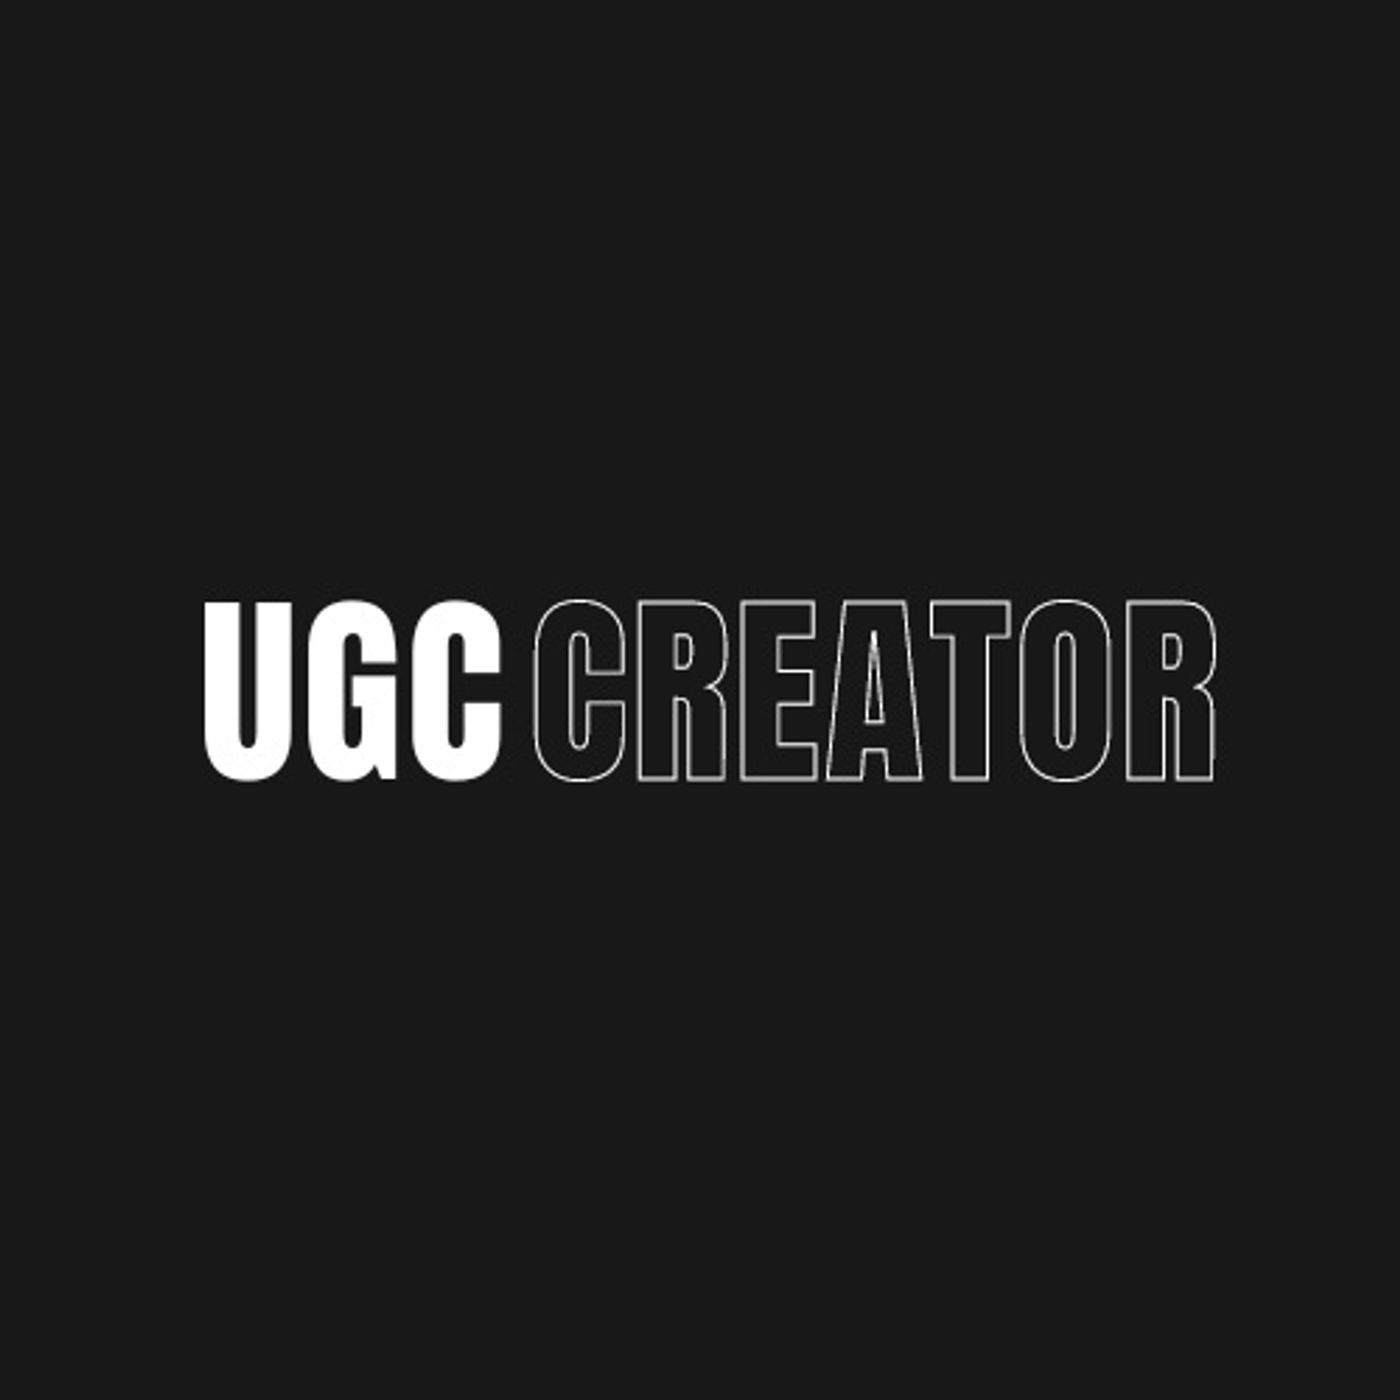 UGC Creator Jobs: Job Board Broadcast